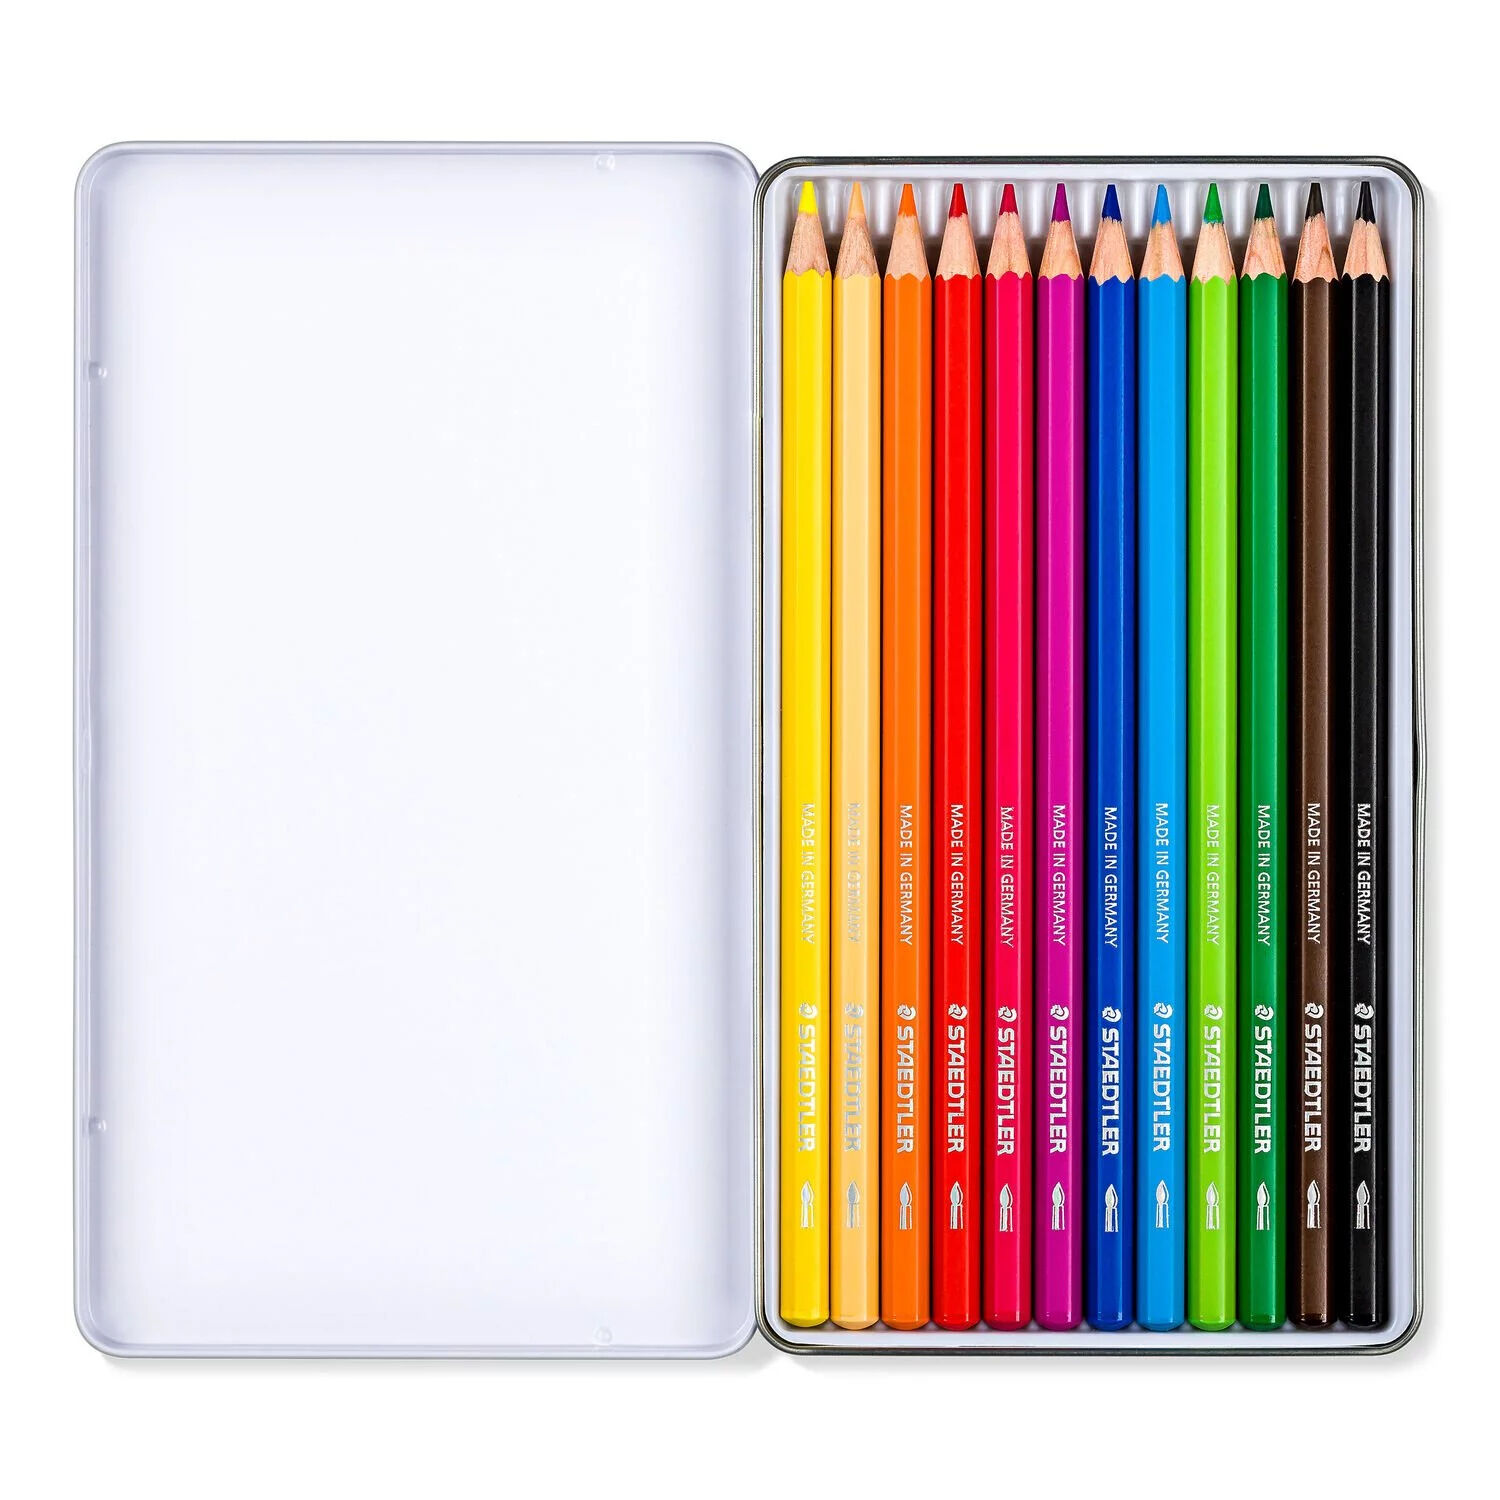 NEU Metalletui mit 12 Farbstiften in sortierten Farben Bild 2